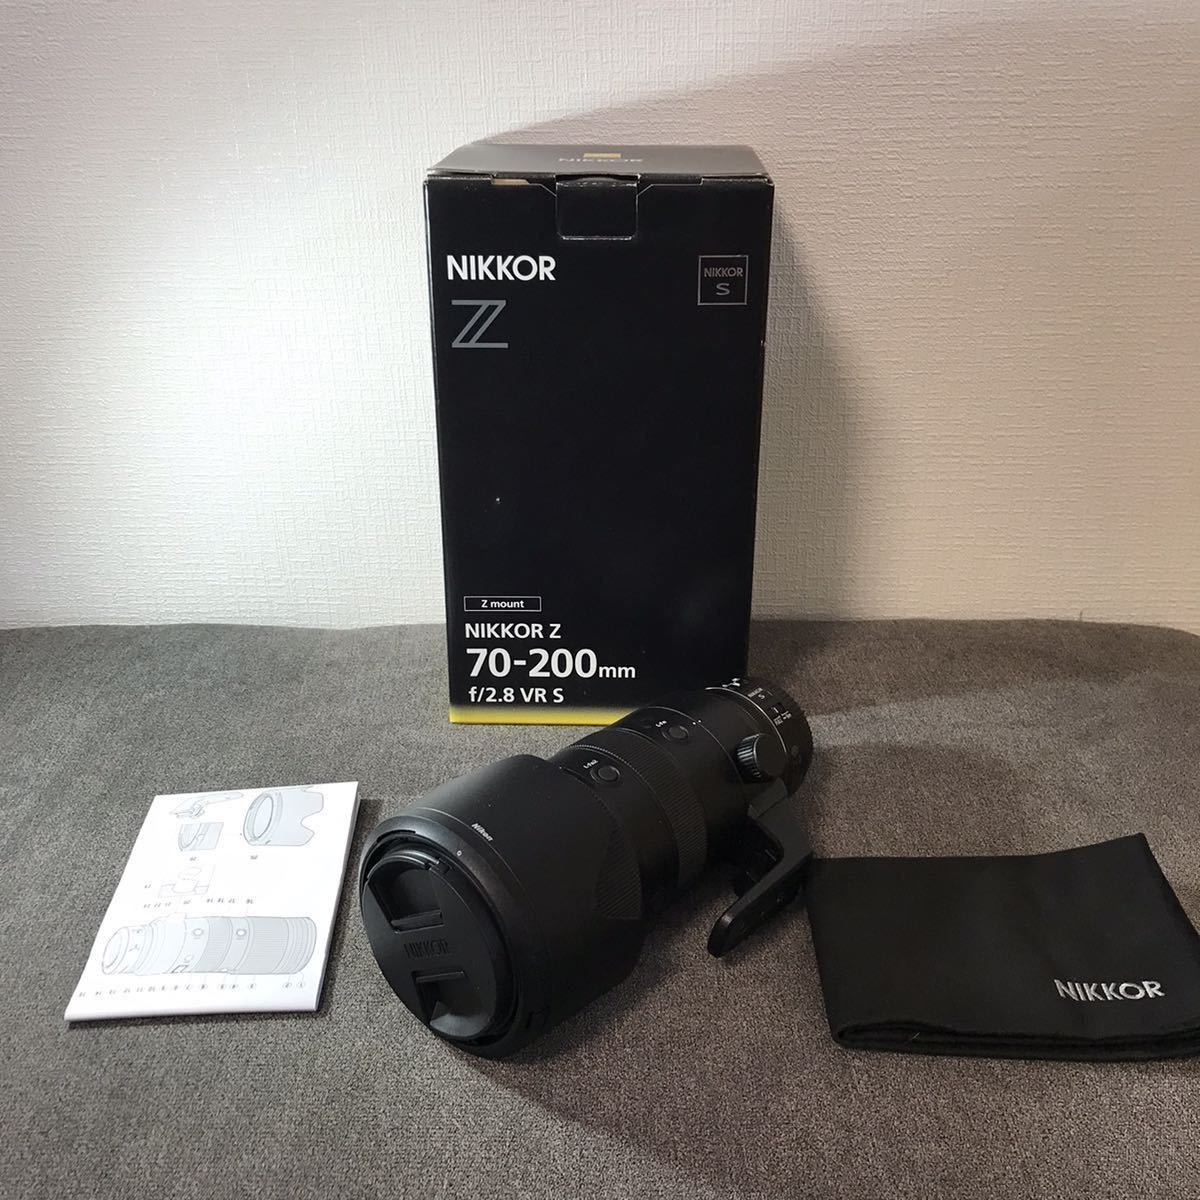 Nikon NIKKOR Z 70-200mm f/2.8 VR S Z mount